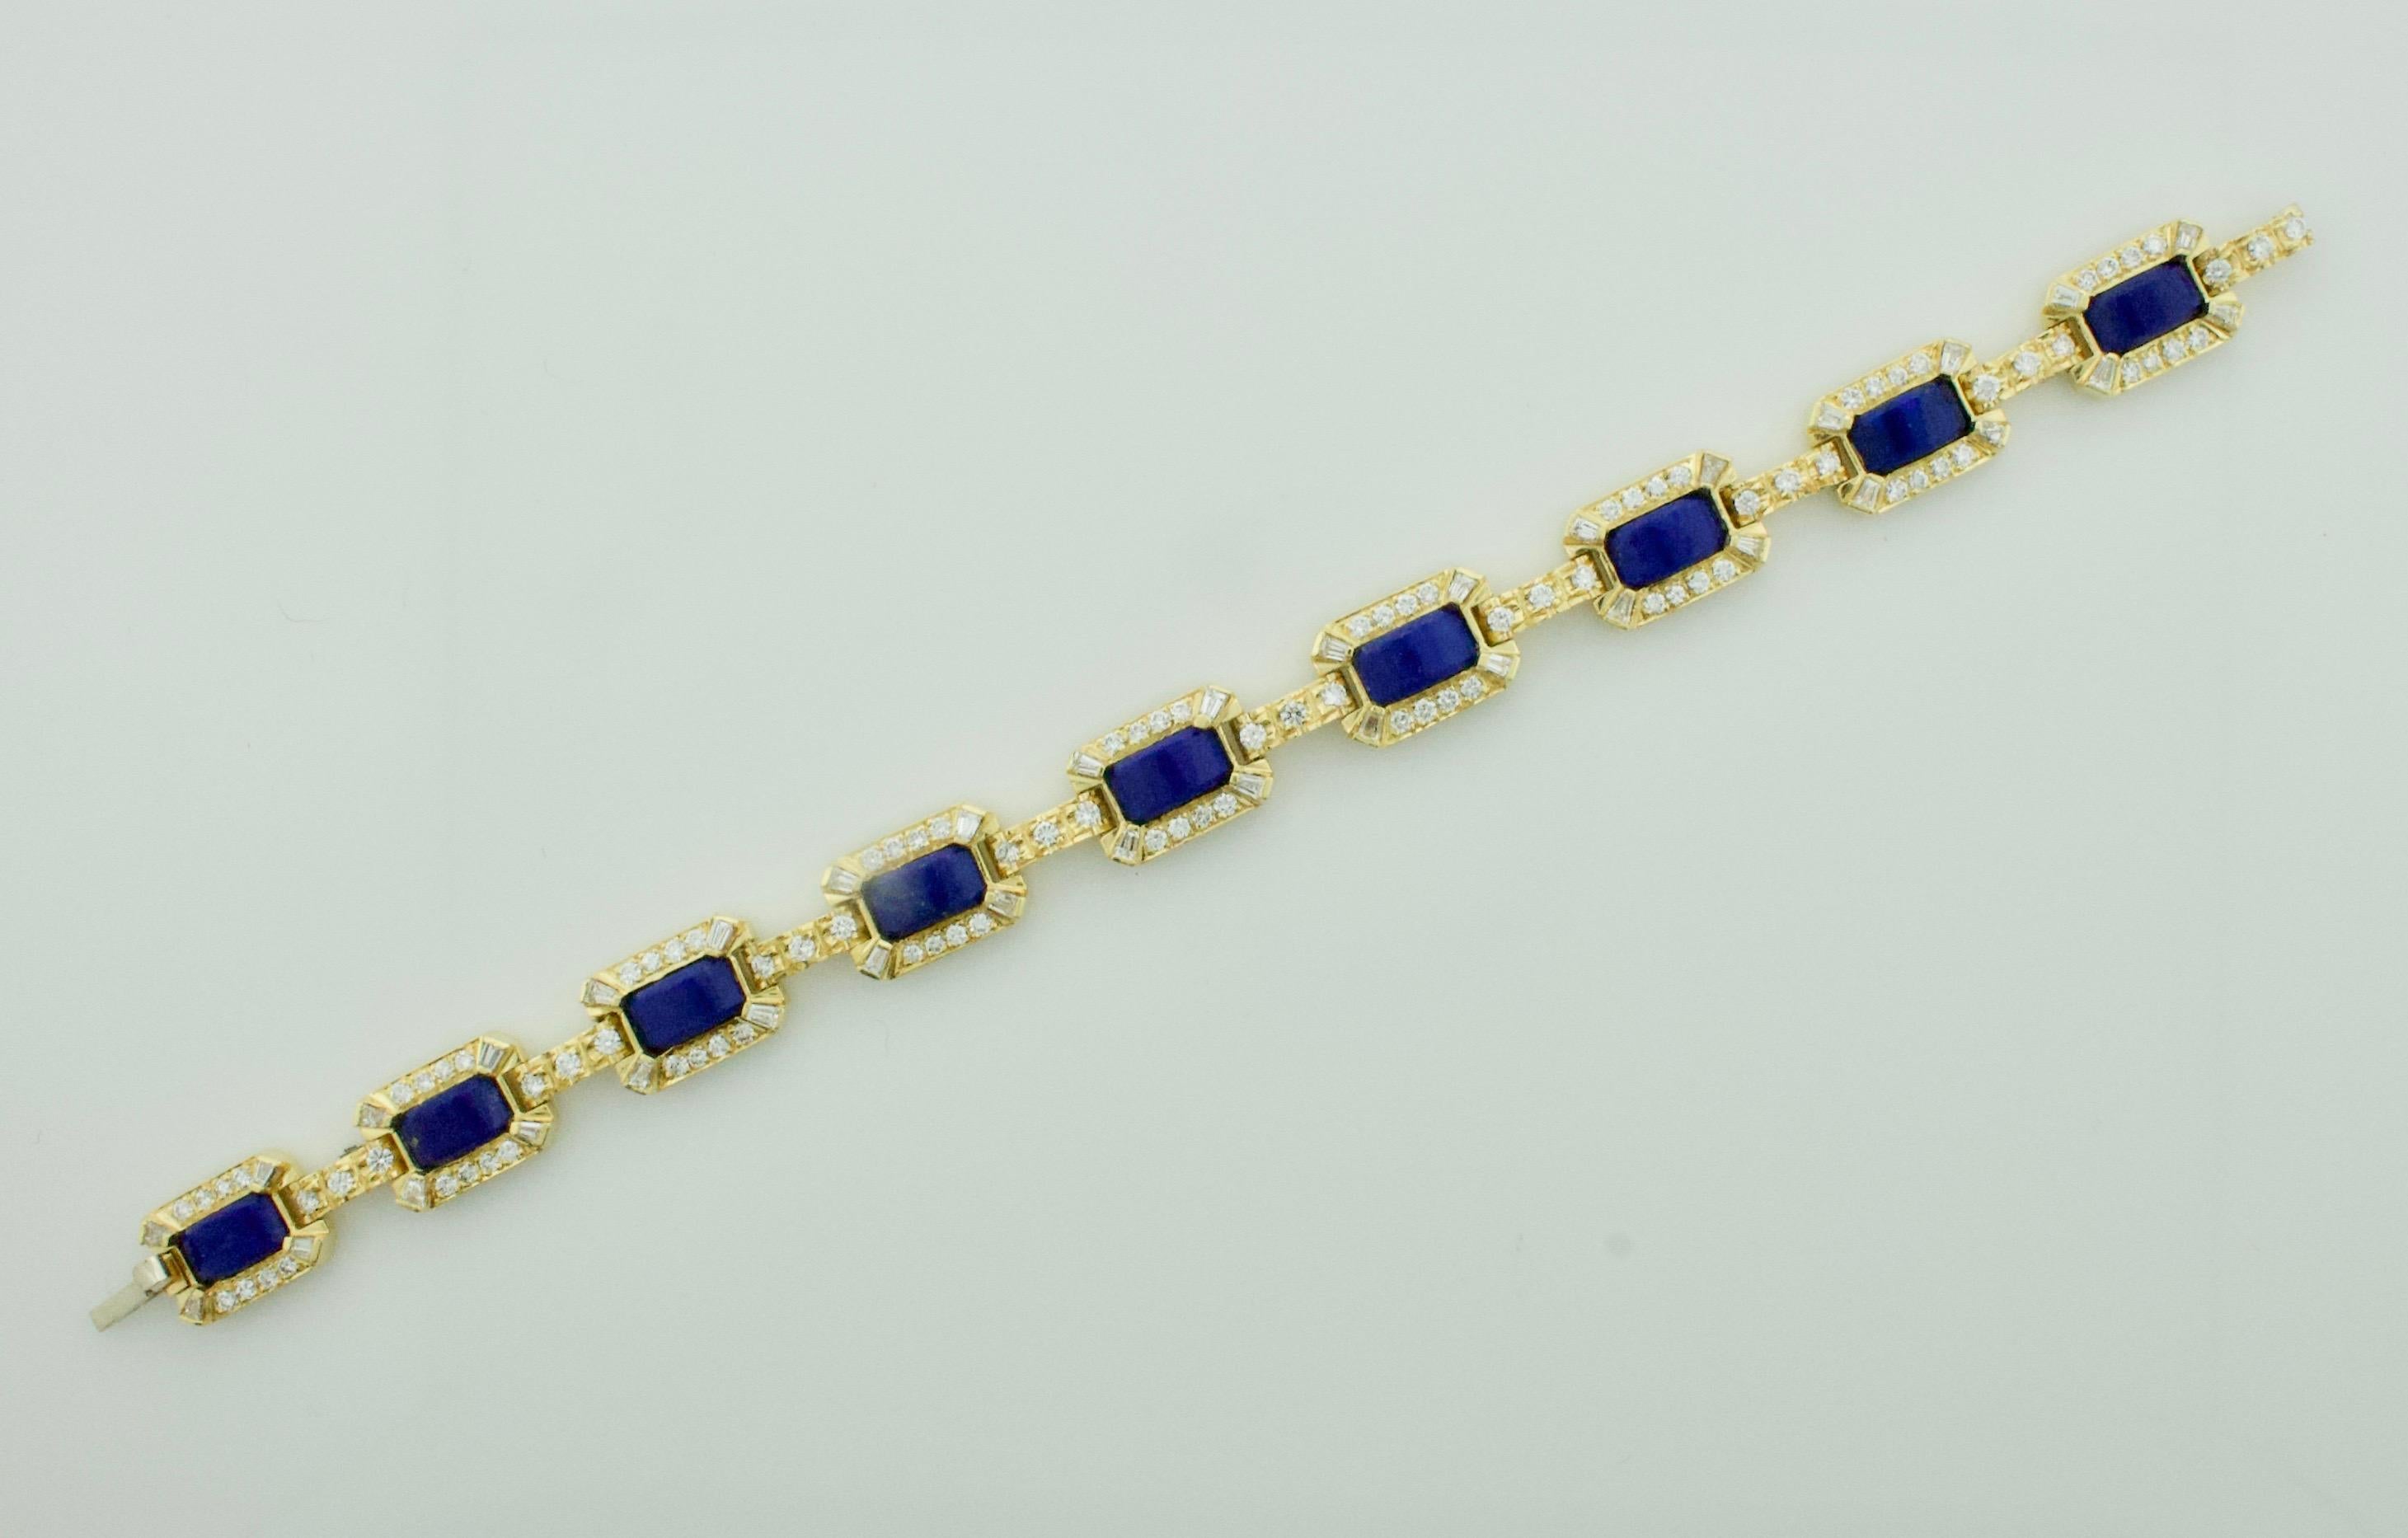 Rehaussez votre collection de bijoux avec notre exquis bracelet en lapis-lazuli et diamants, une fusion rayonnante de luxe et de sophistication. Réalisé en or jaune 18 carats, ce bracelet témoigne d'une élégance intemporelle et d'un savoir-faire